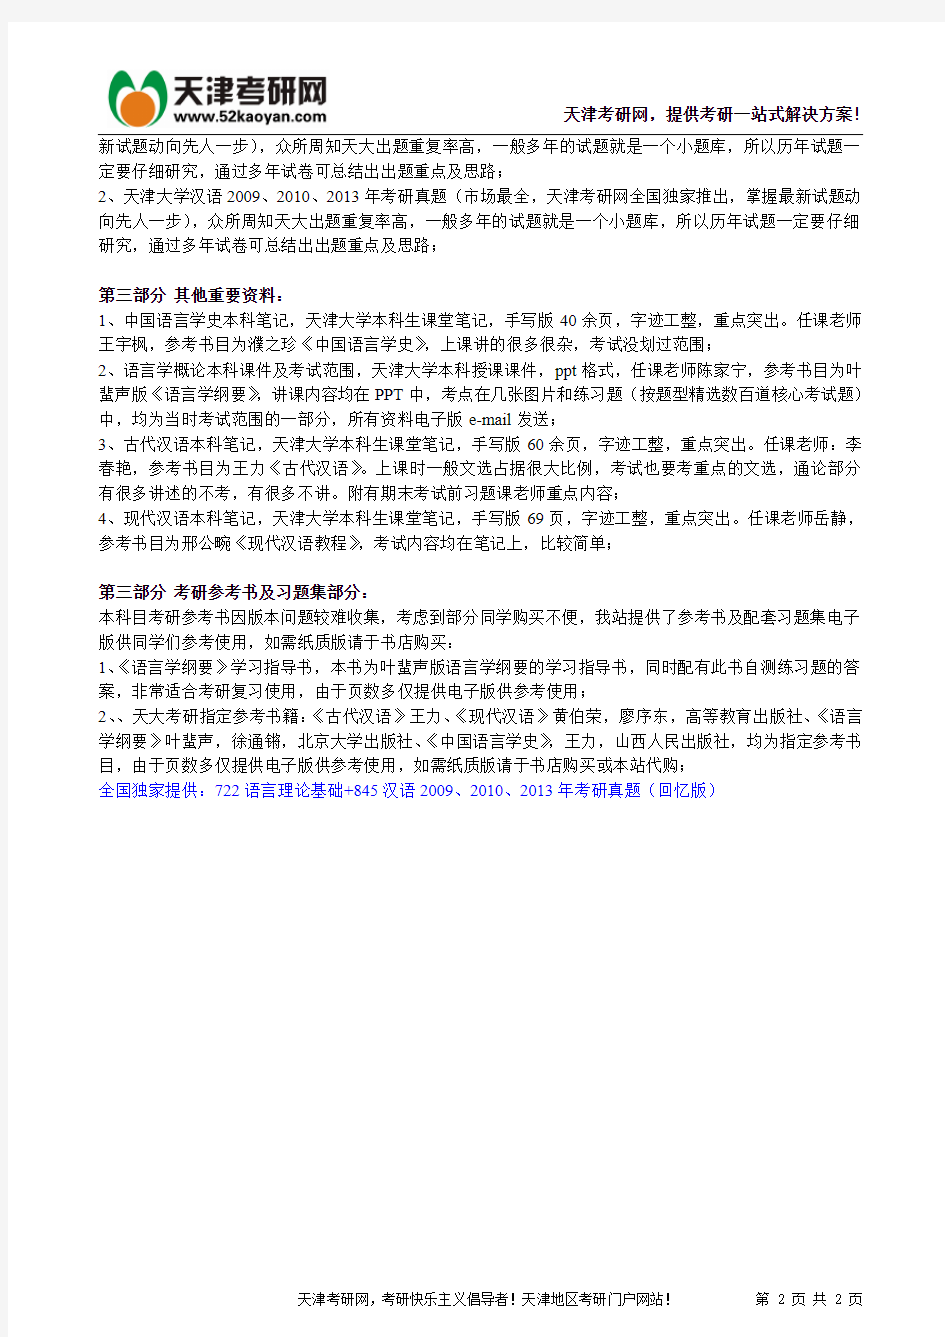 天津大学语言学及应用语言学专业考研红宝书(722语言理论基础+845汉语)